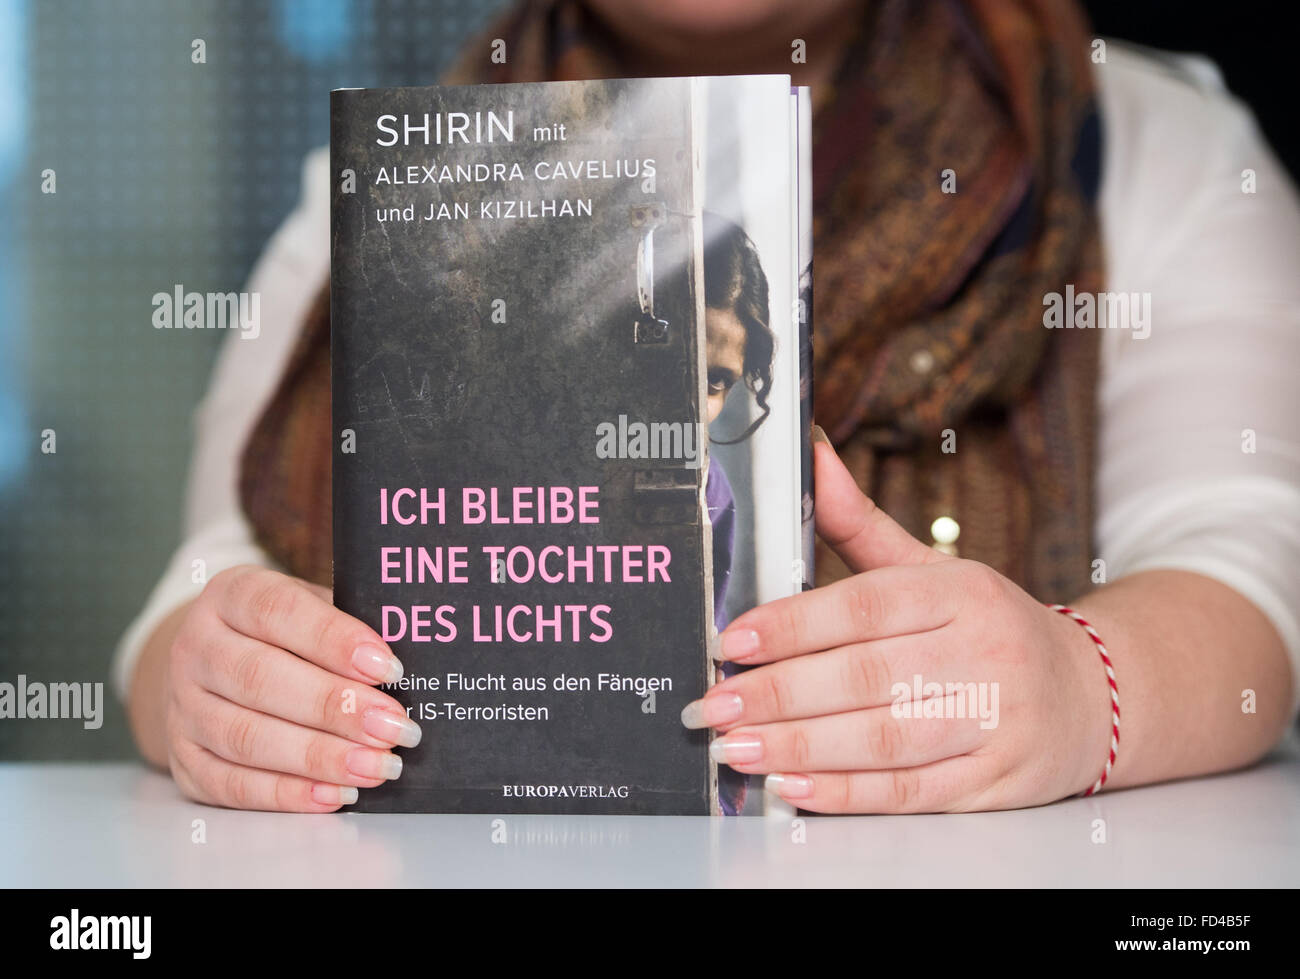 Die Yeziden Autor, unter ihrem Pseudonym Shirin, hält ihr neues Buch in  ihren Händen, mit dem Titel "Ich Bleibe Eine Tochter des Lichts" (ich  bleibe eine Tochter des Lichts), während einer Buchvorstellung